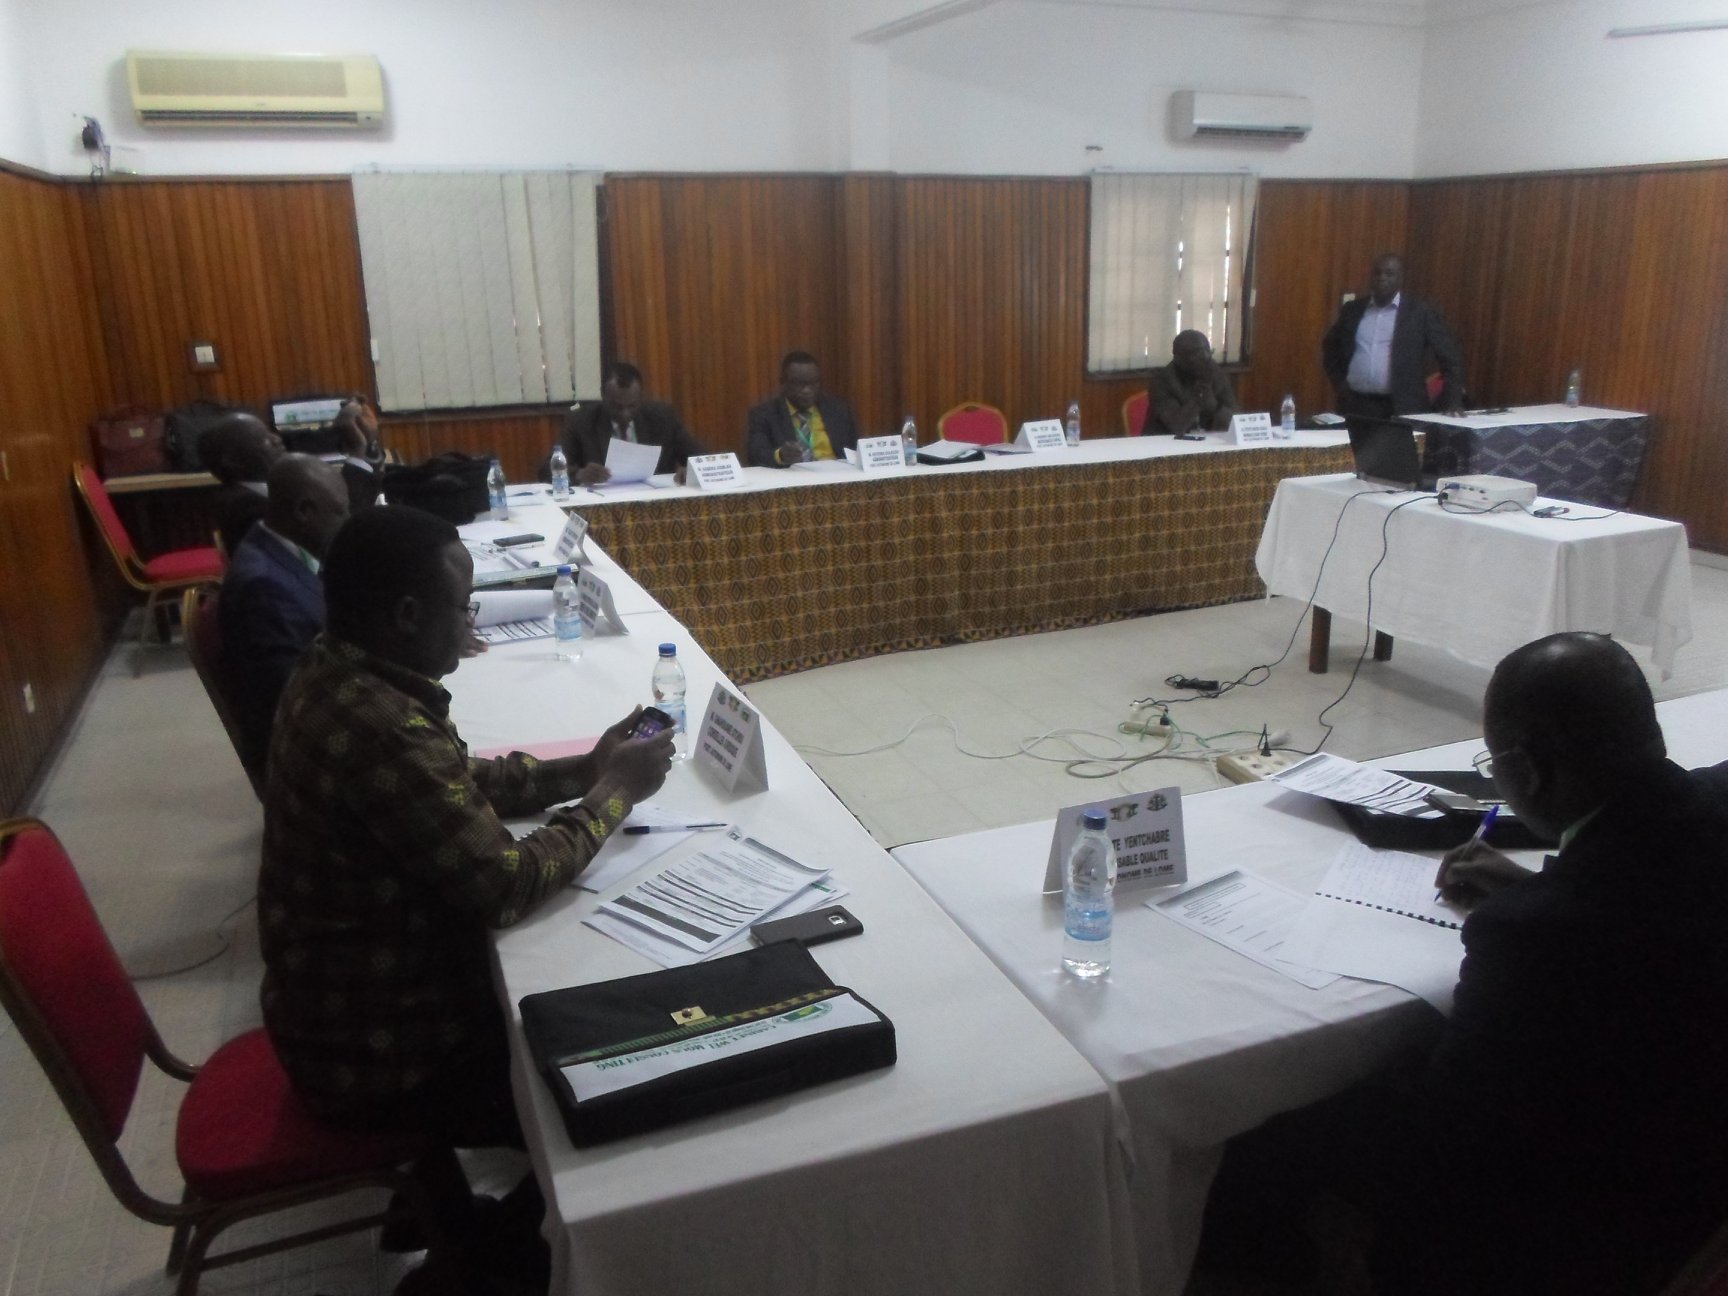 Clôture du top séminaire des administrateurs du port autonome de Lomé (PAL)